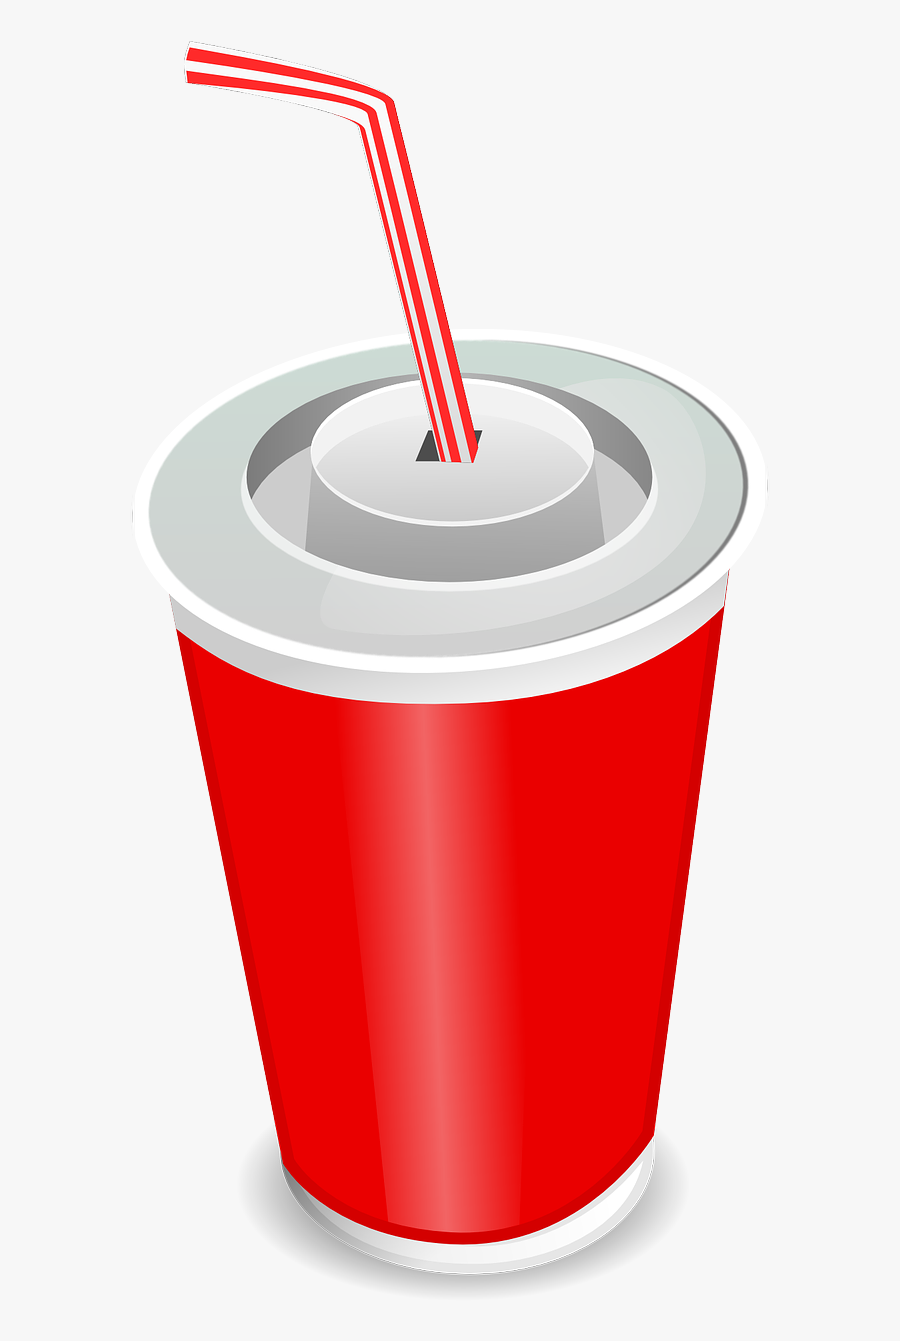 Soda Cup Clipart - Soda Cup Clip Art , Free Transparent Clipart